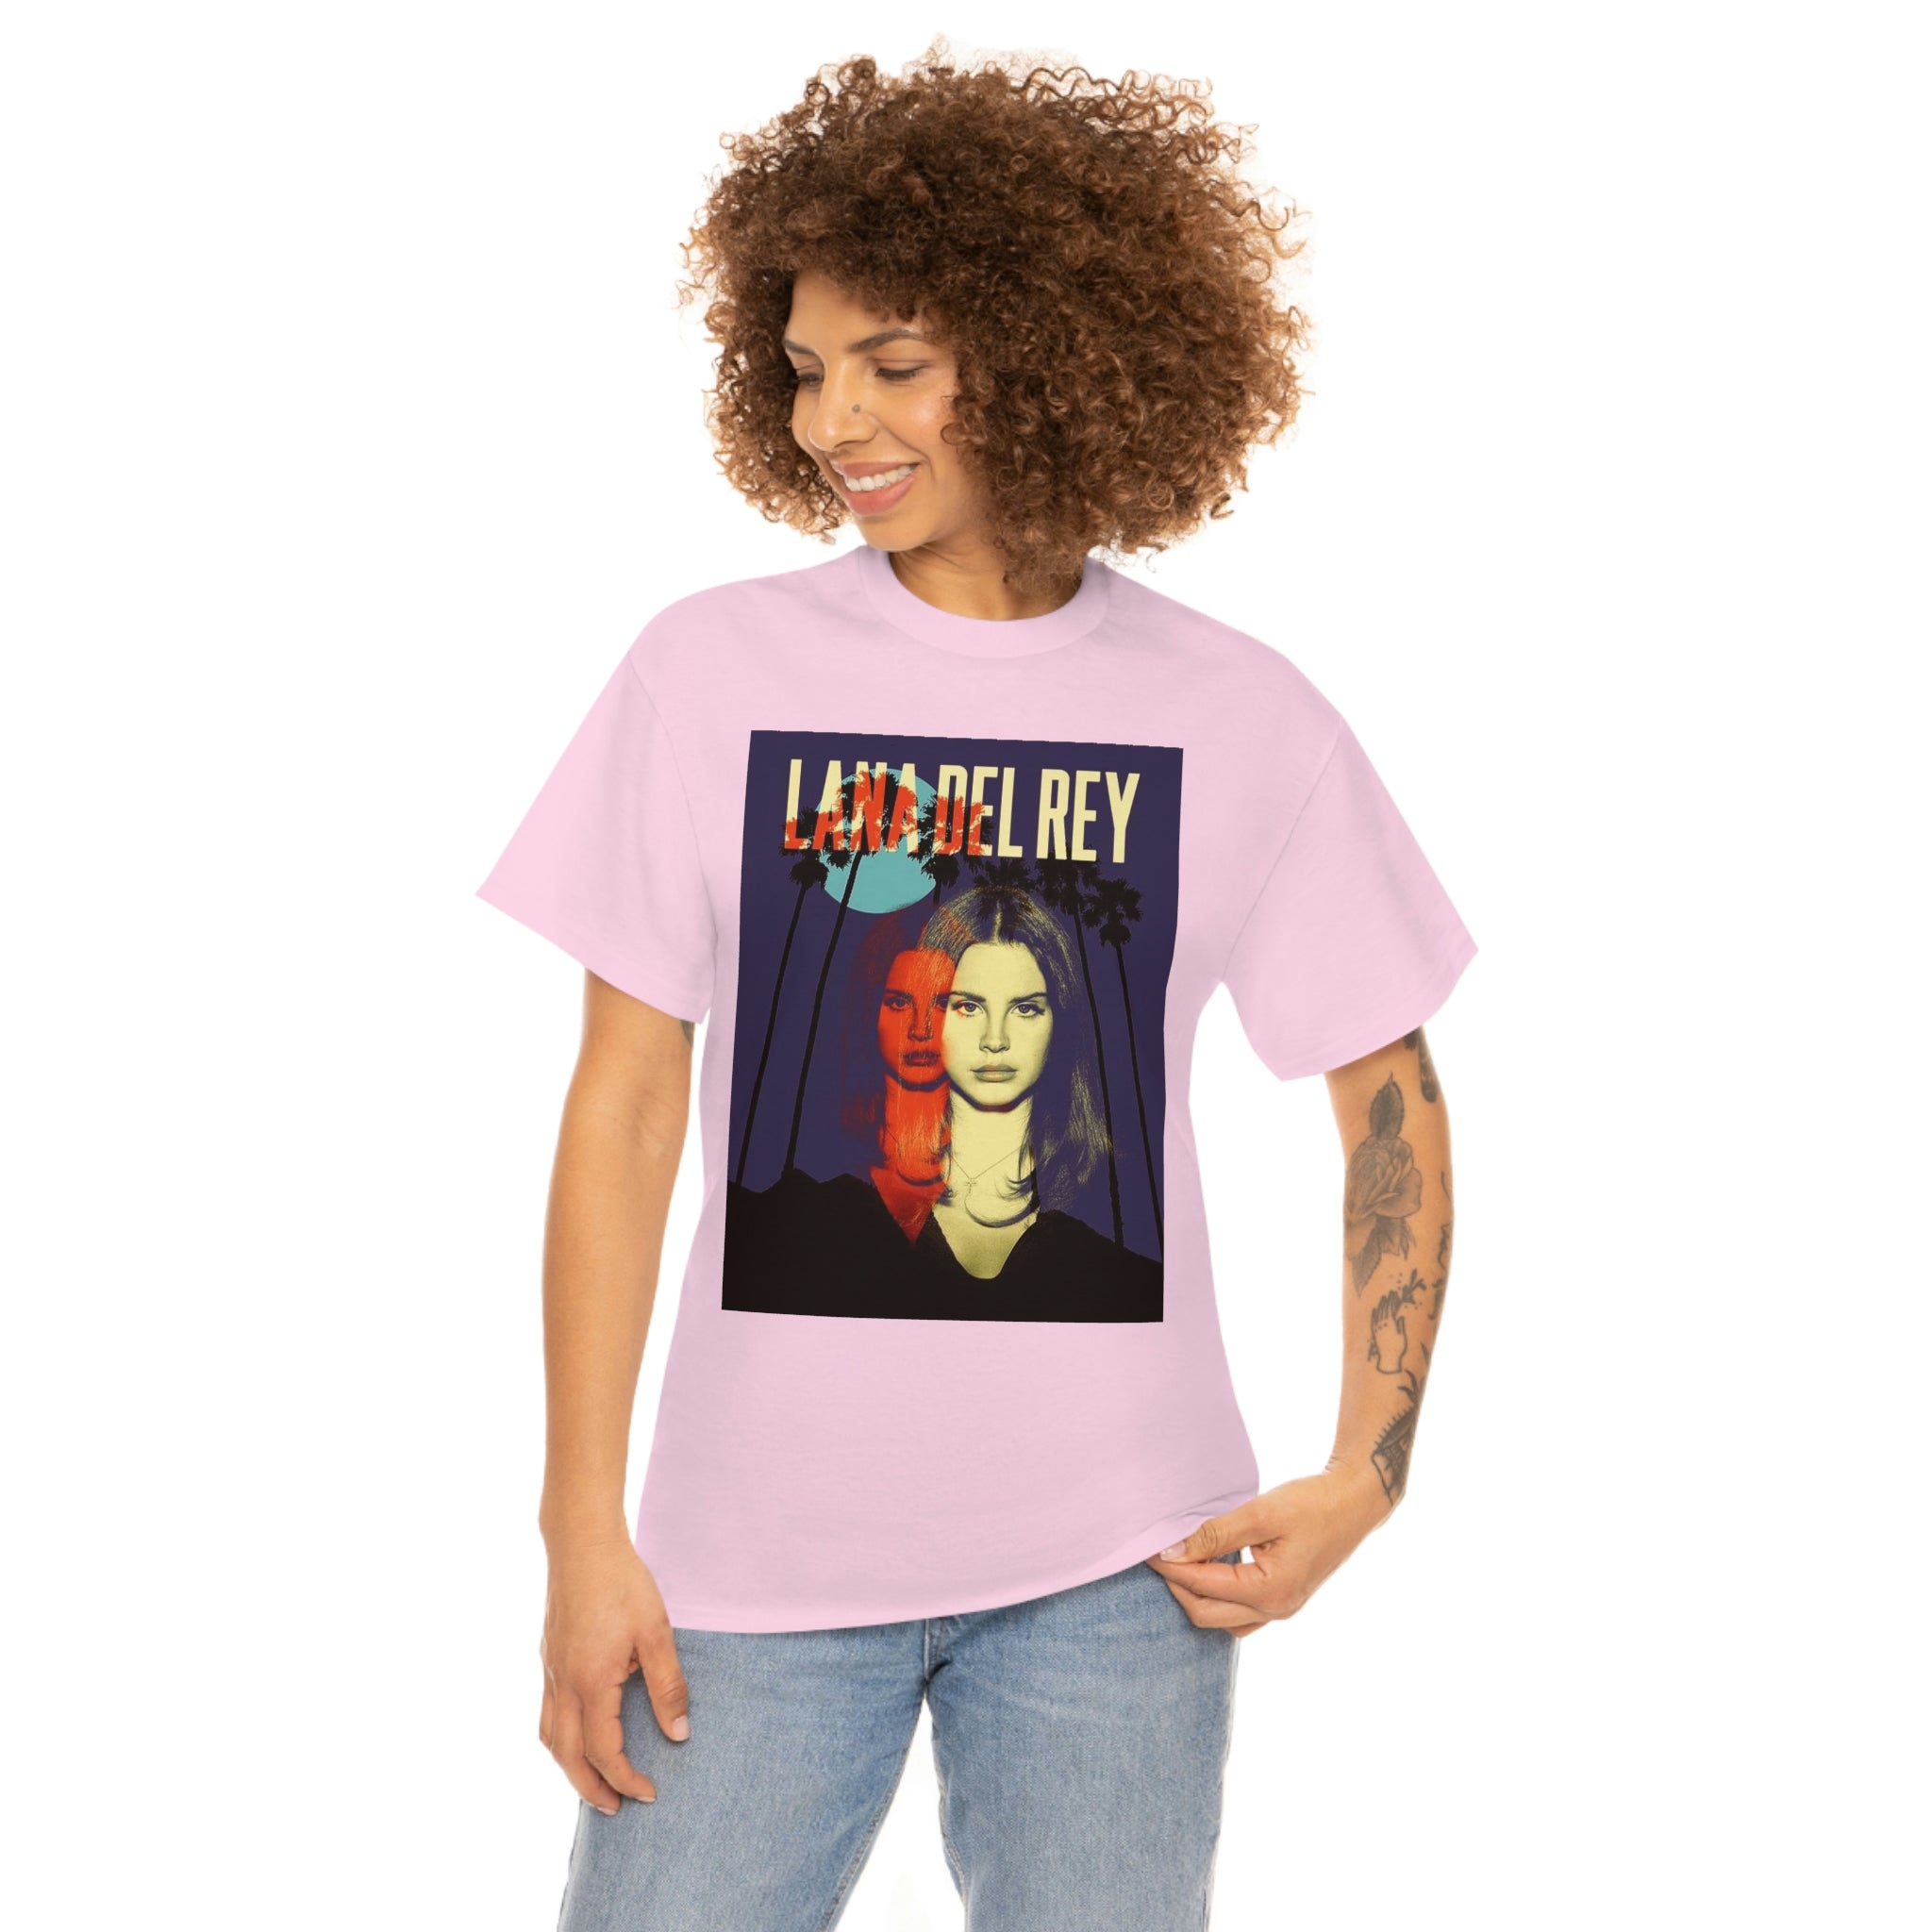 Lana Del rey New Album T-shirt, Lana del rey merch 2023, LDR 2023, Lana Del rey merch